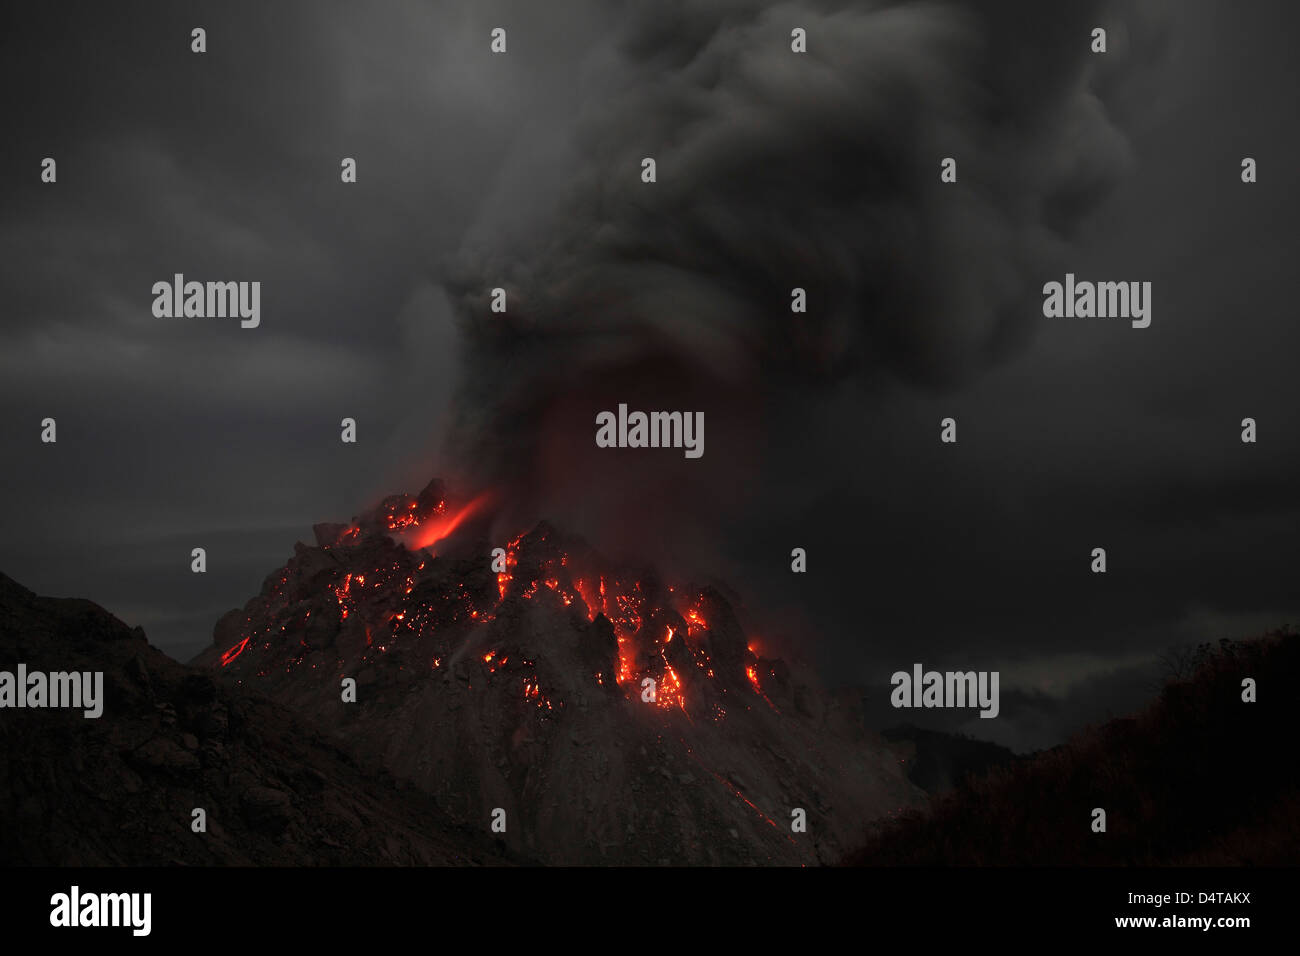 30 novembre 2012 - incandescente Rerombola cupola lavica del vulcano Paluweh cenere durante la fase di sfiato, Flores, Indonesia. Foto Stock